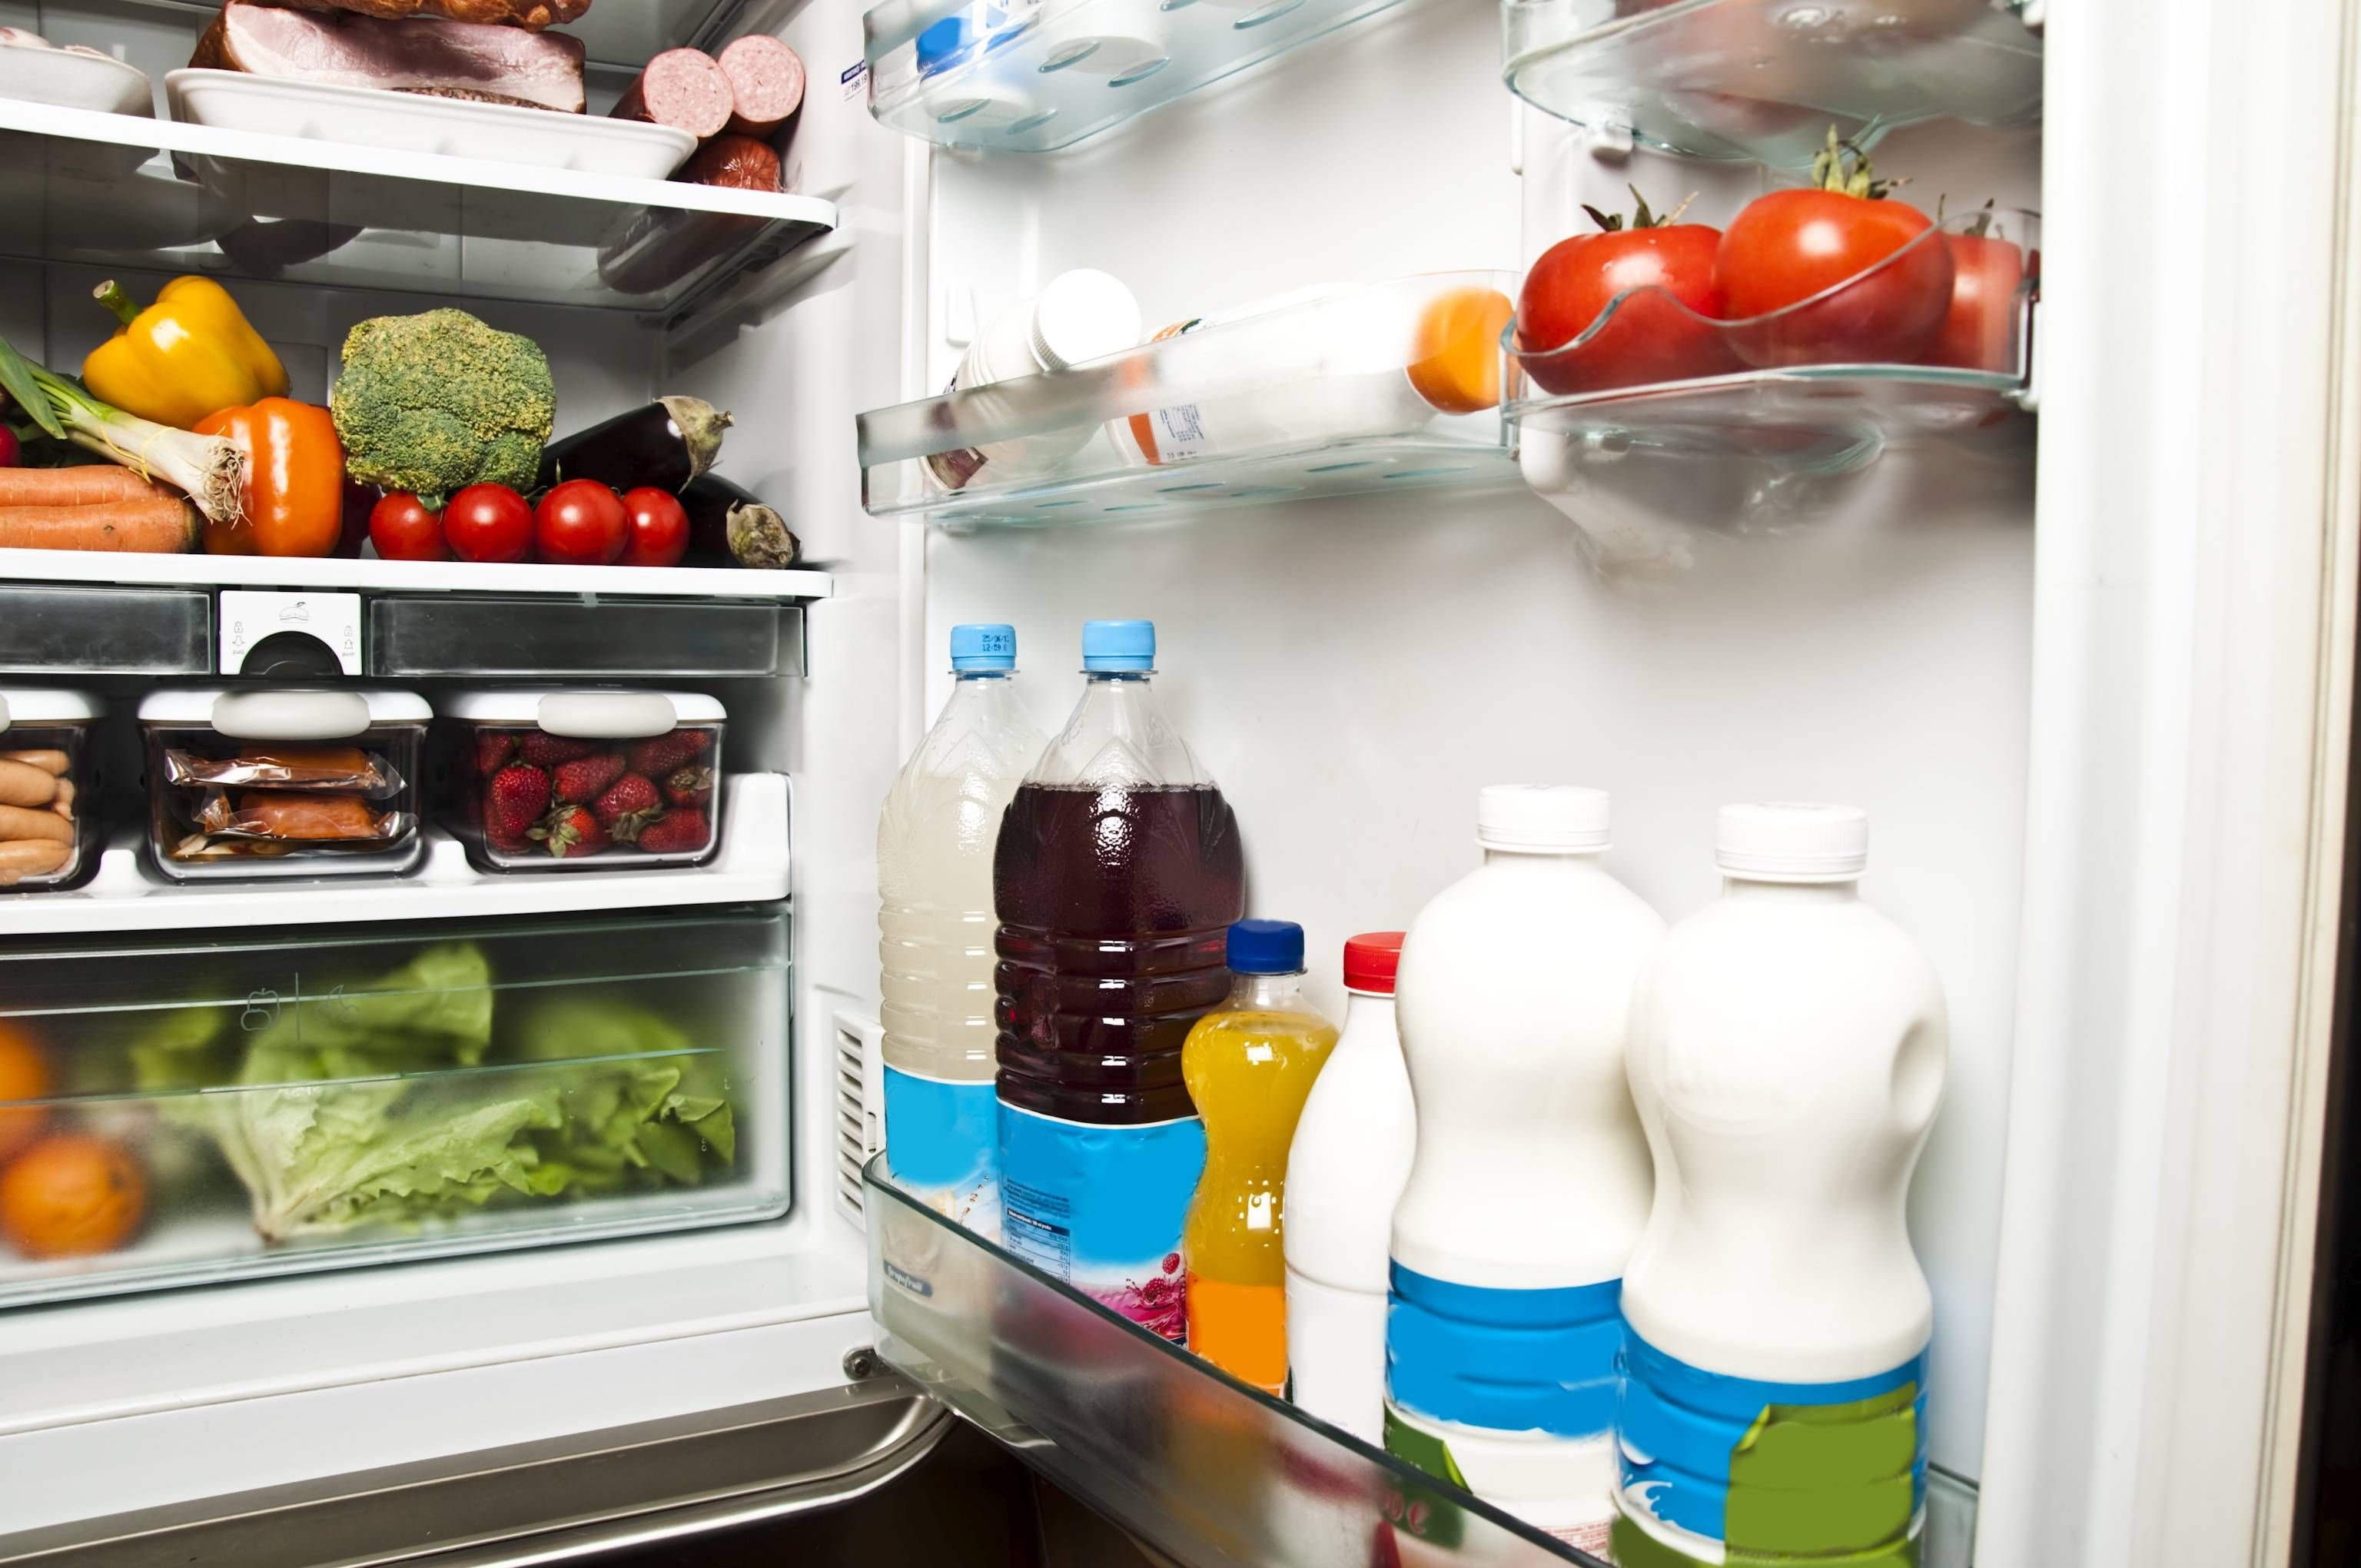 There some juice in the fridge. Холодильник с продуктами. Открытый холодильник. Холодильник с едой. Открытый холодильник с едой.